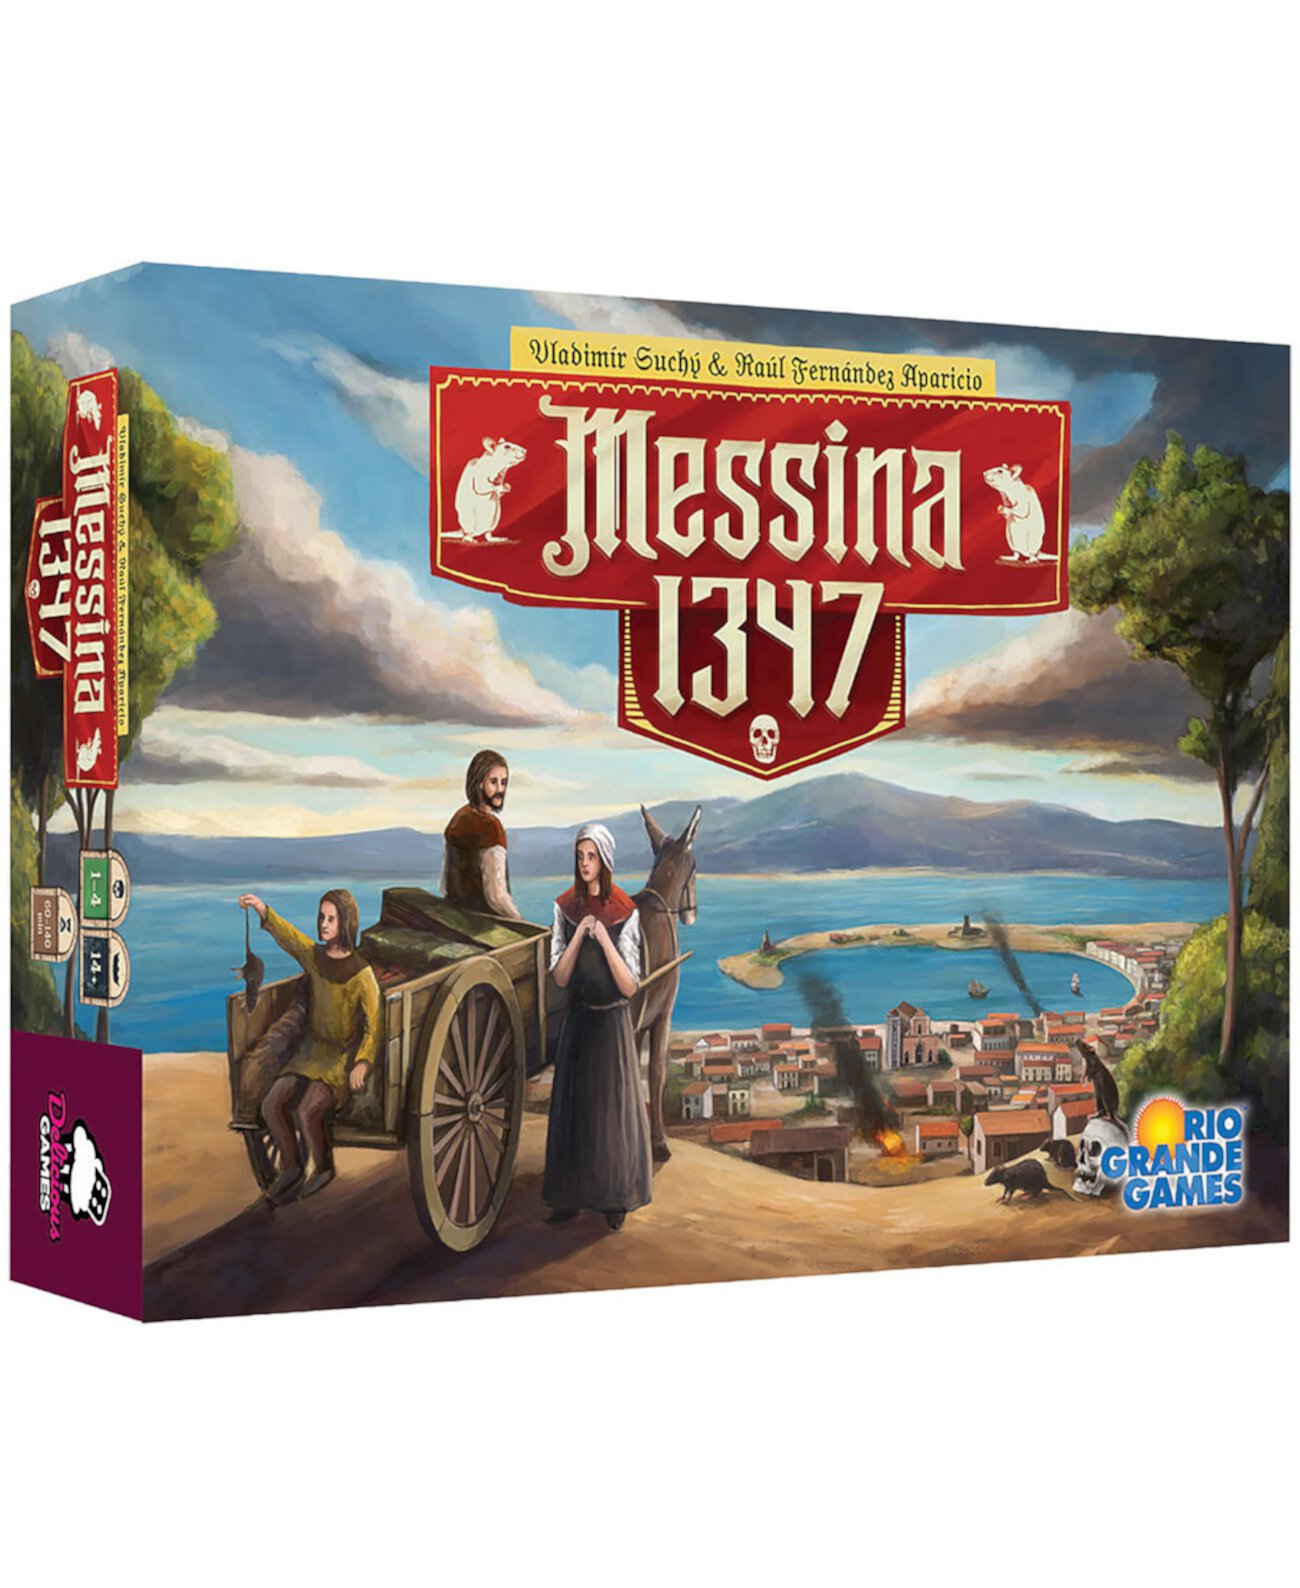 Мессина 1347 Стратегические настольные игры Rio Grande